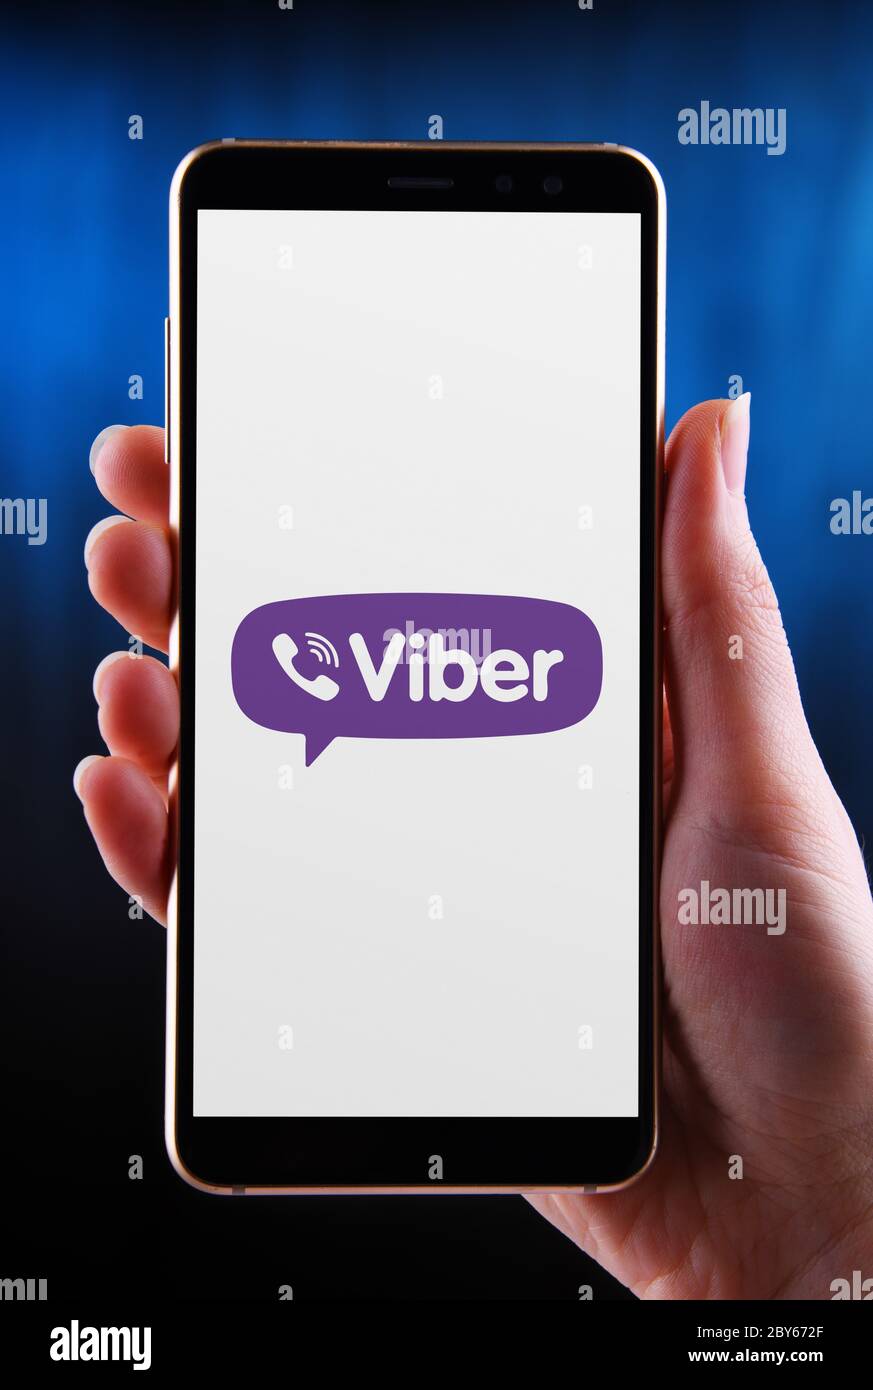 POZNAN, POL - 21 MAI 2020 : mains tenant smartphone avec le logo de Viber, une application de voix sur IP multi-plateforme et de messagerie instantanée Banque D'Images